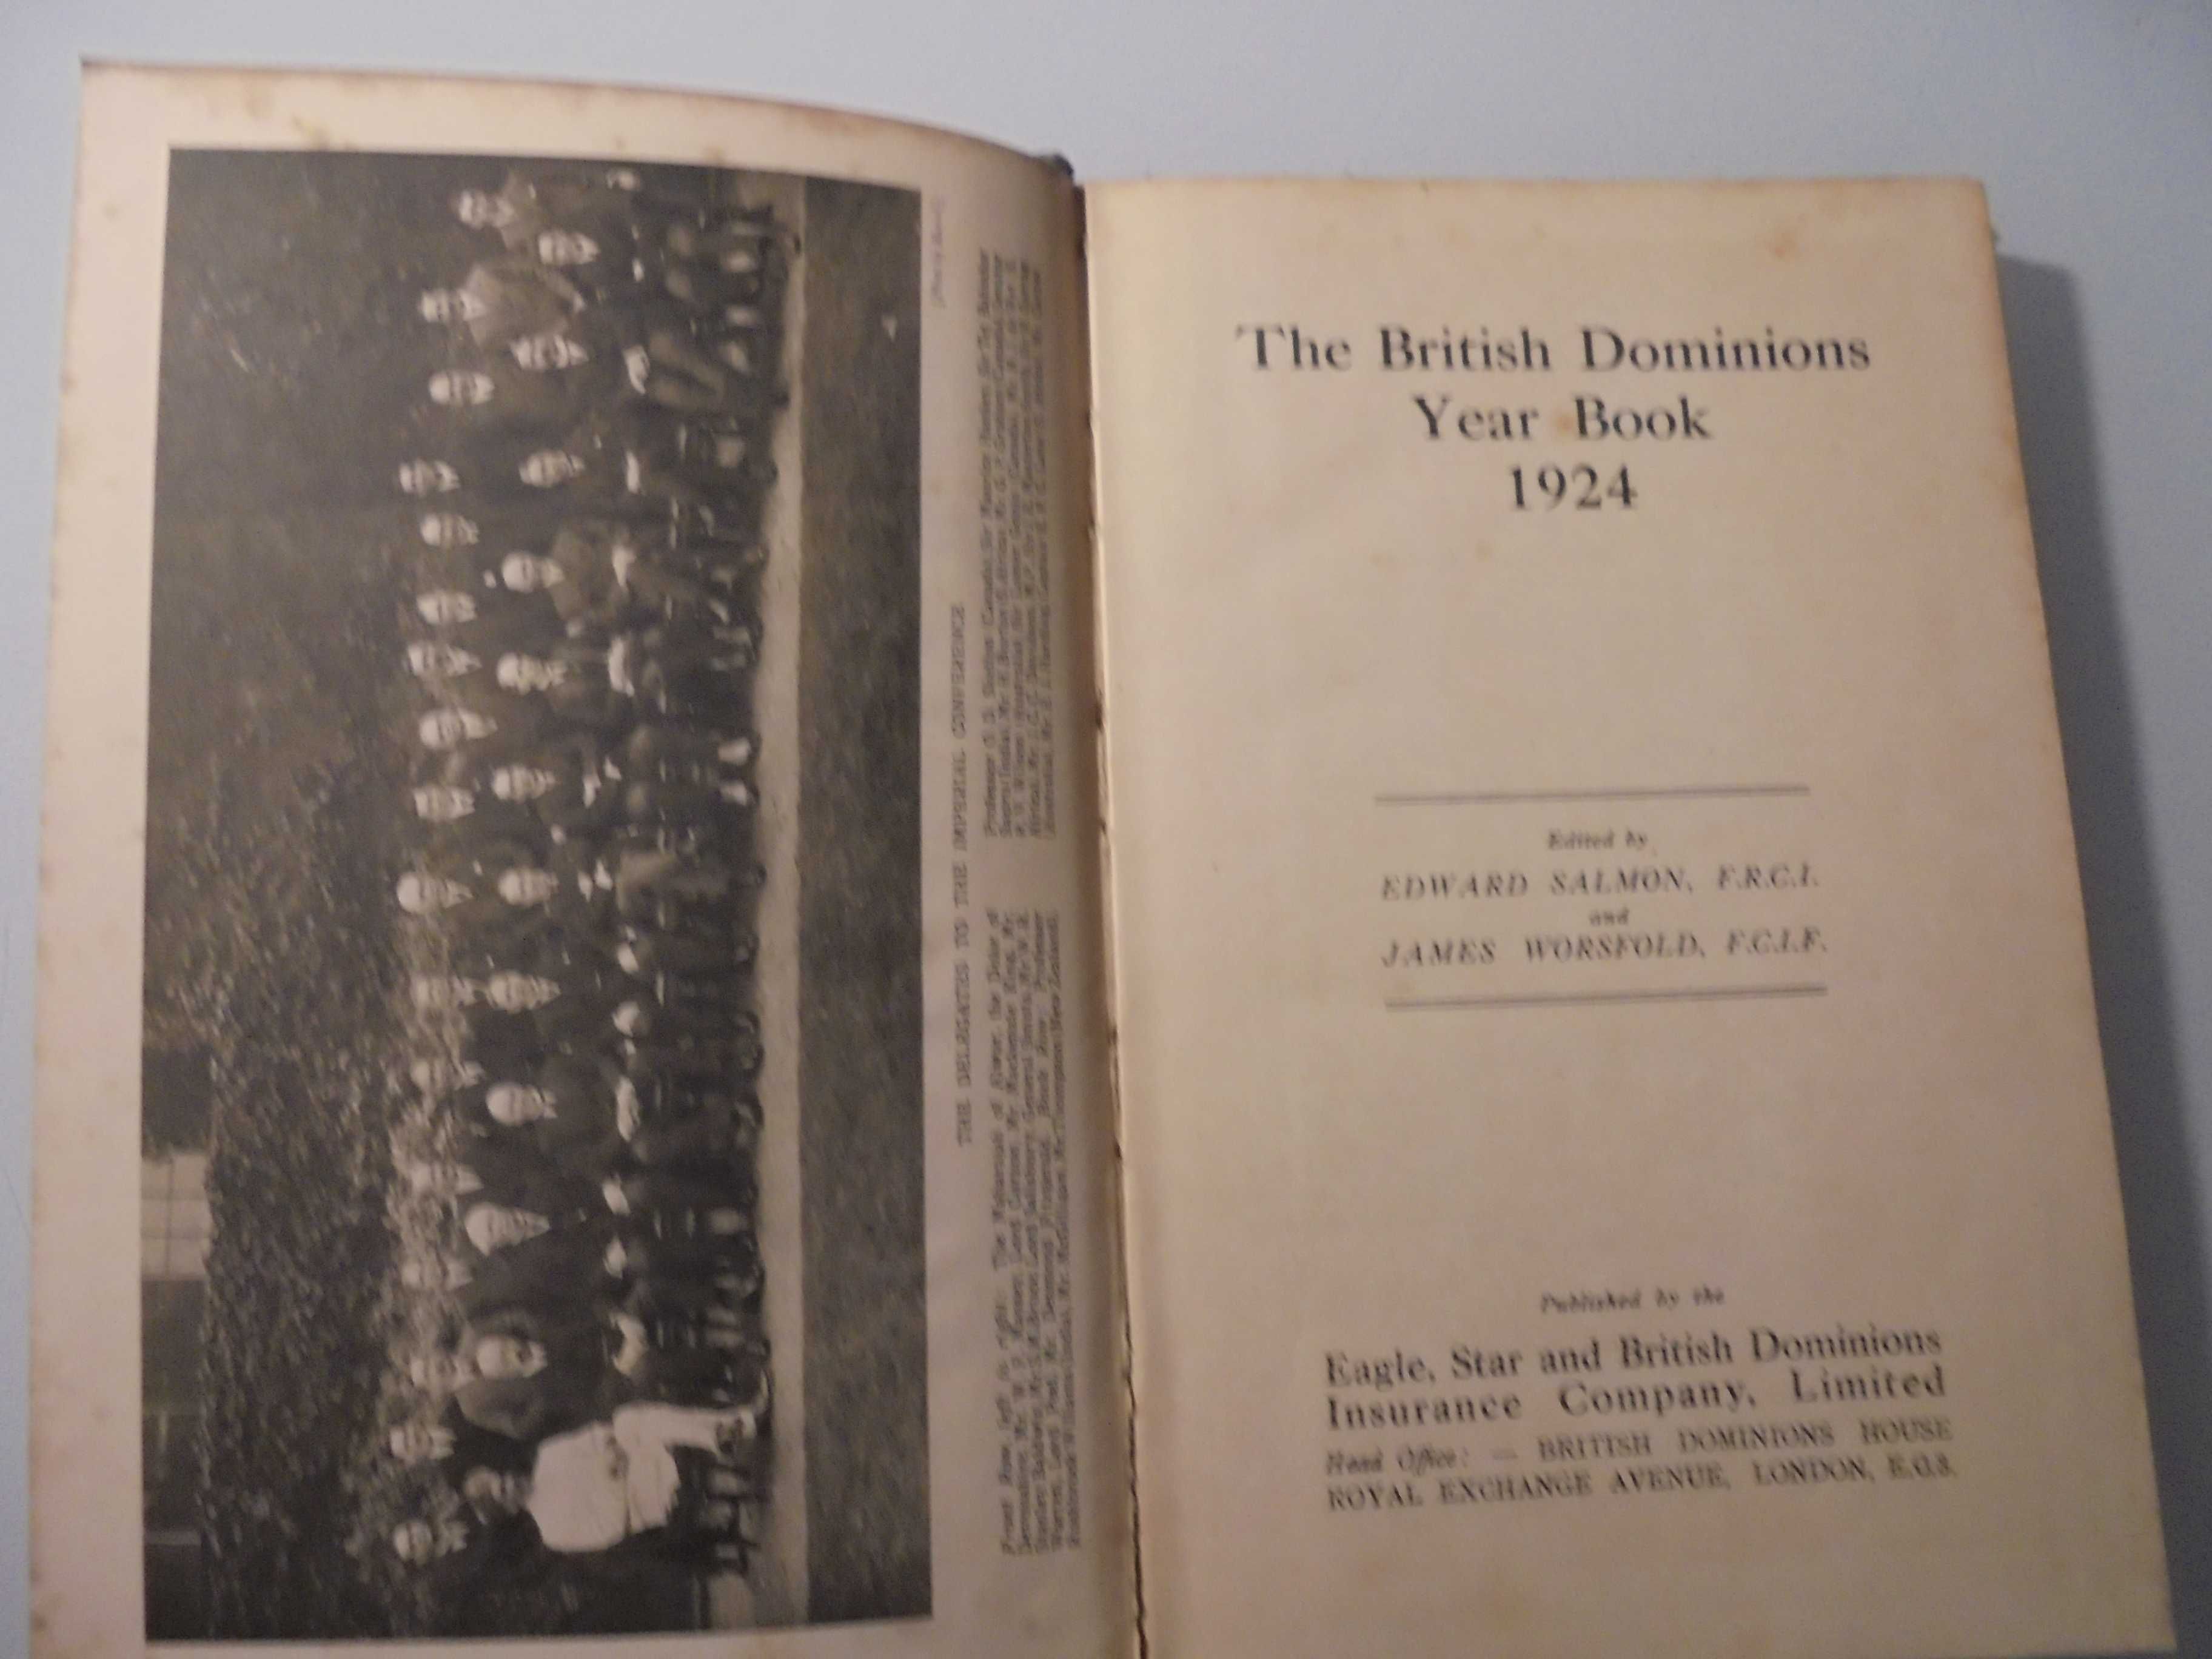 Salmon (Edward-James Worsfold);The British Dominions Year Book-1927